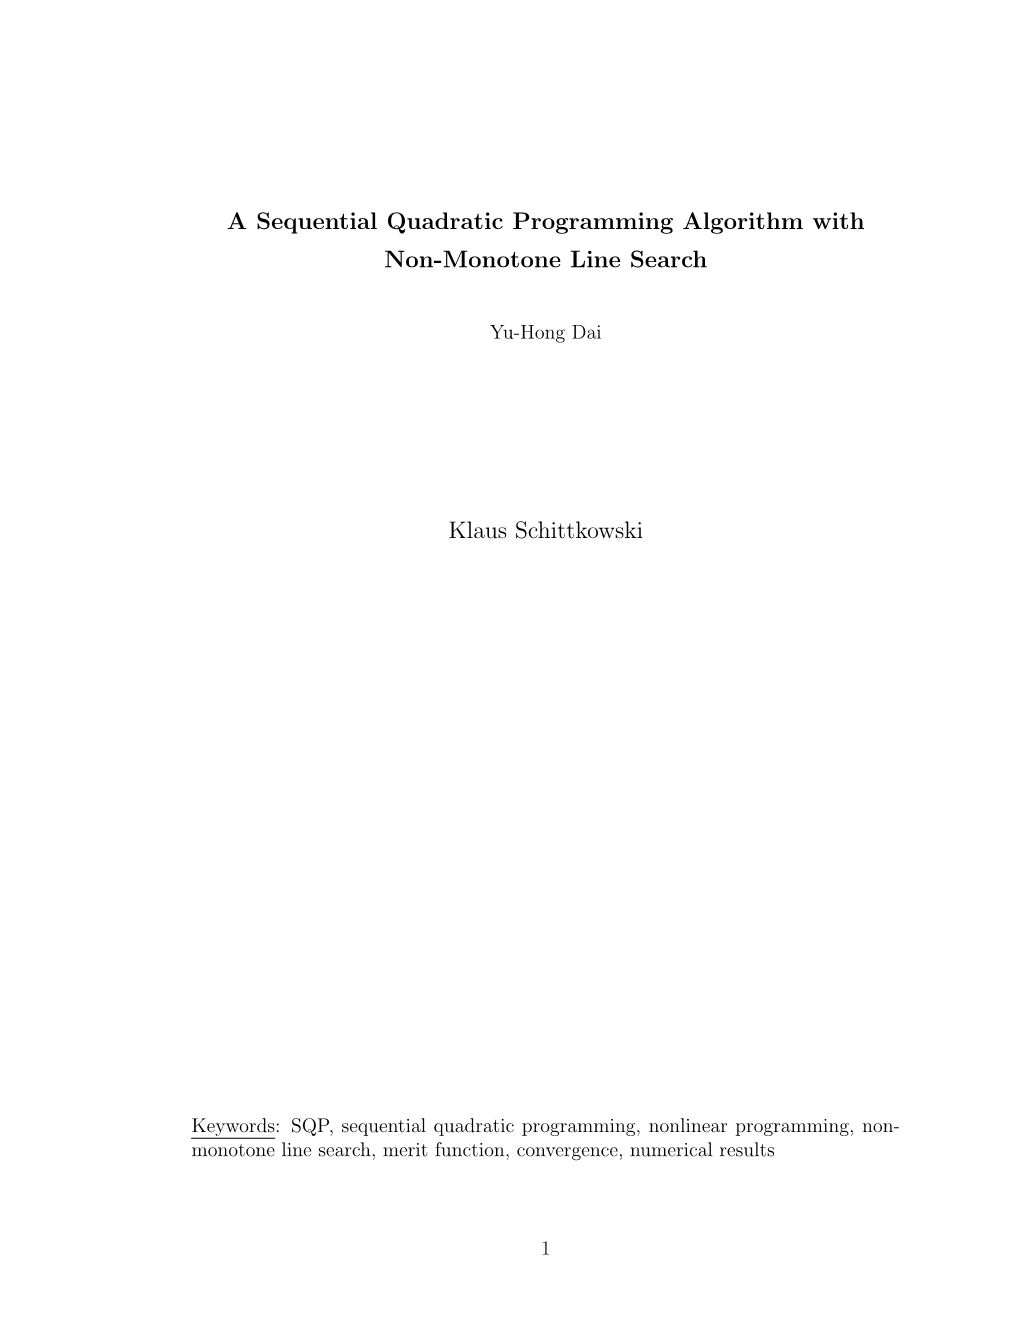 A Sequential Quadratic Programming Algorithm with Non-Monotone Line Search